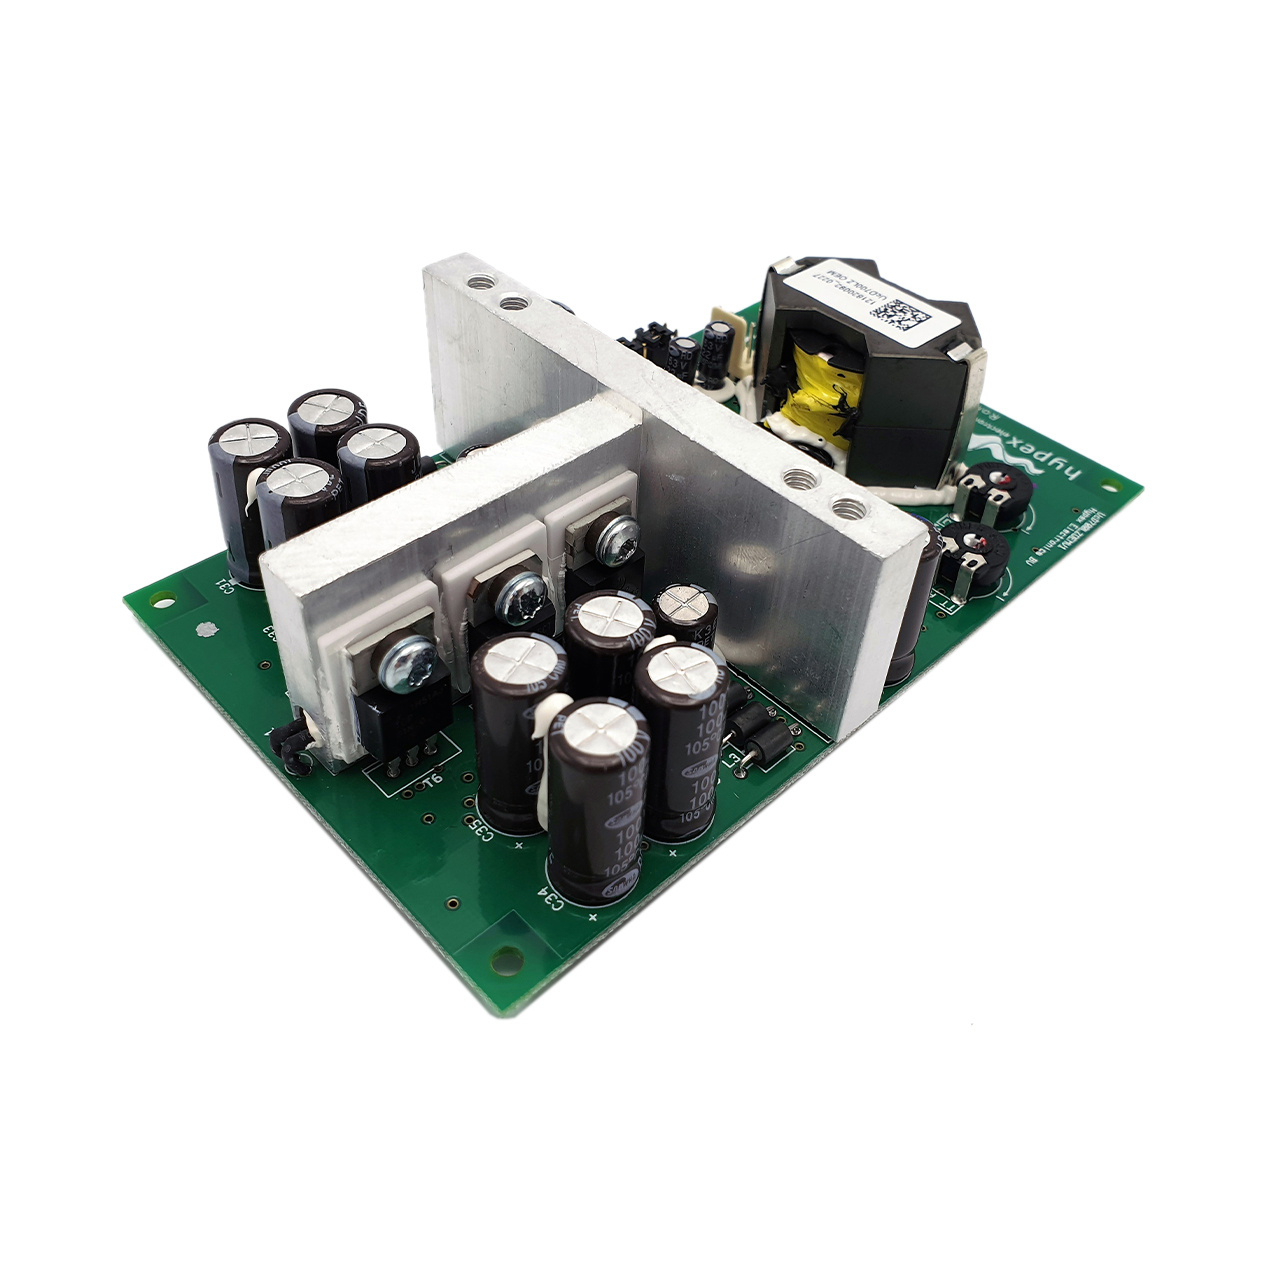 Hypex UcD™ 700LZ OEM amplifier module